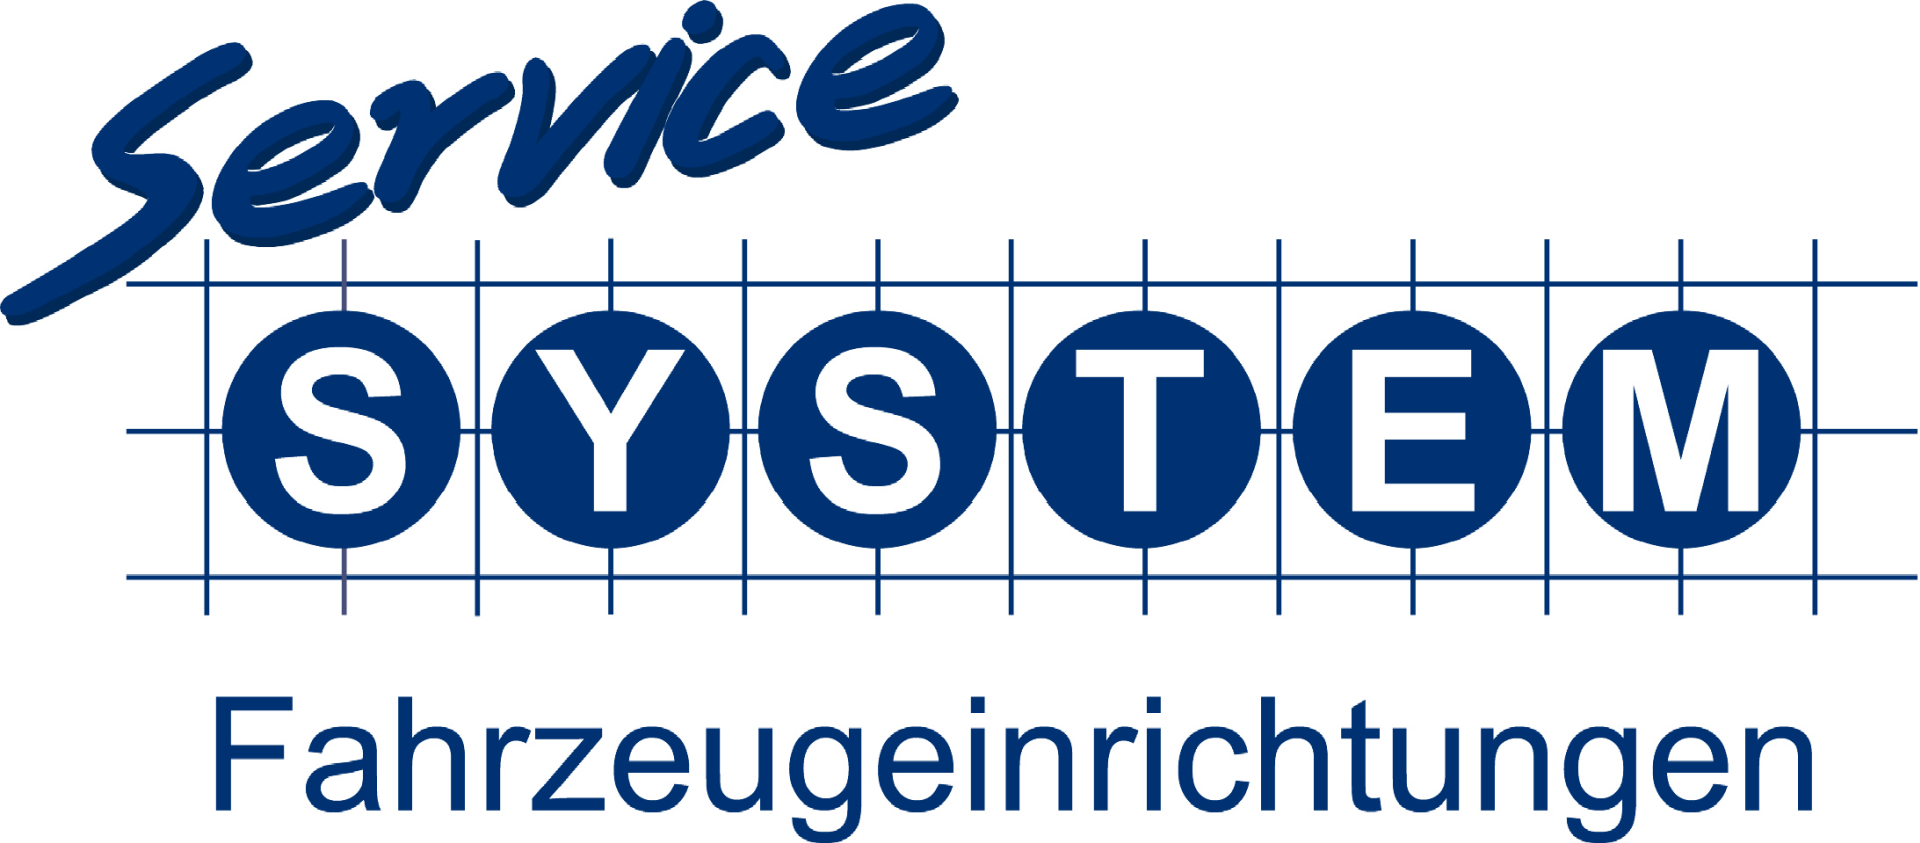 Wenzel GmbH - Service-System-Fahrzeugeinrichtungen